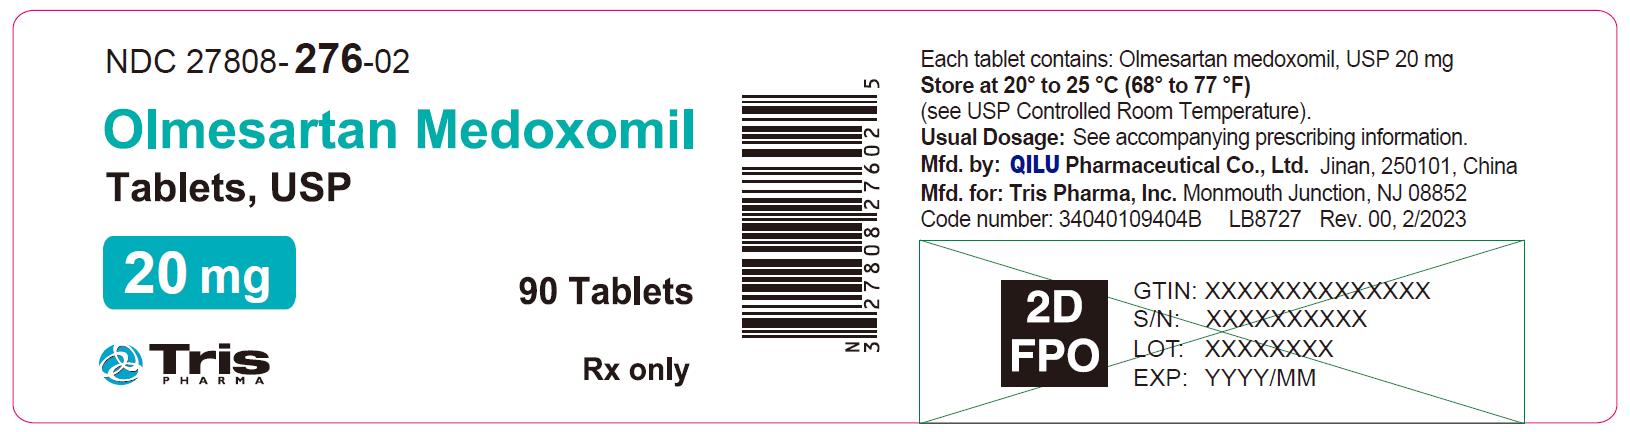 Olmesartan Medoxomil Tablets 20 mg Bottle Label - 90 Tablets